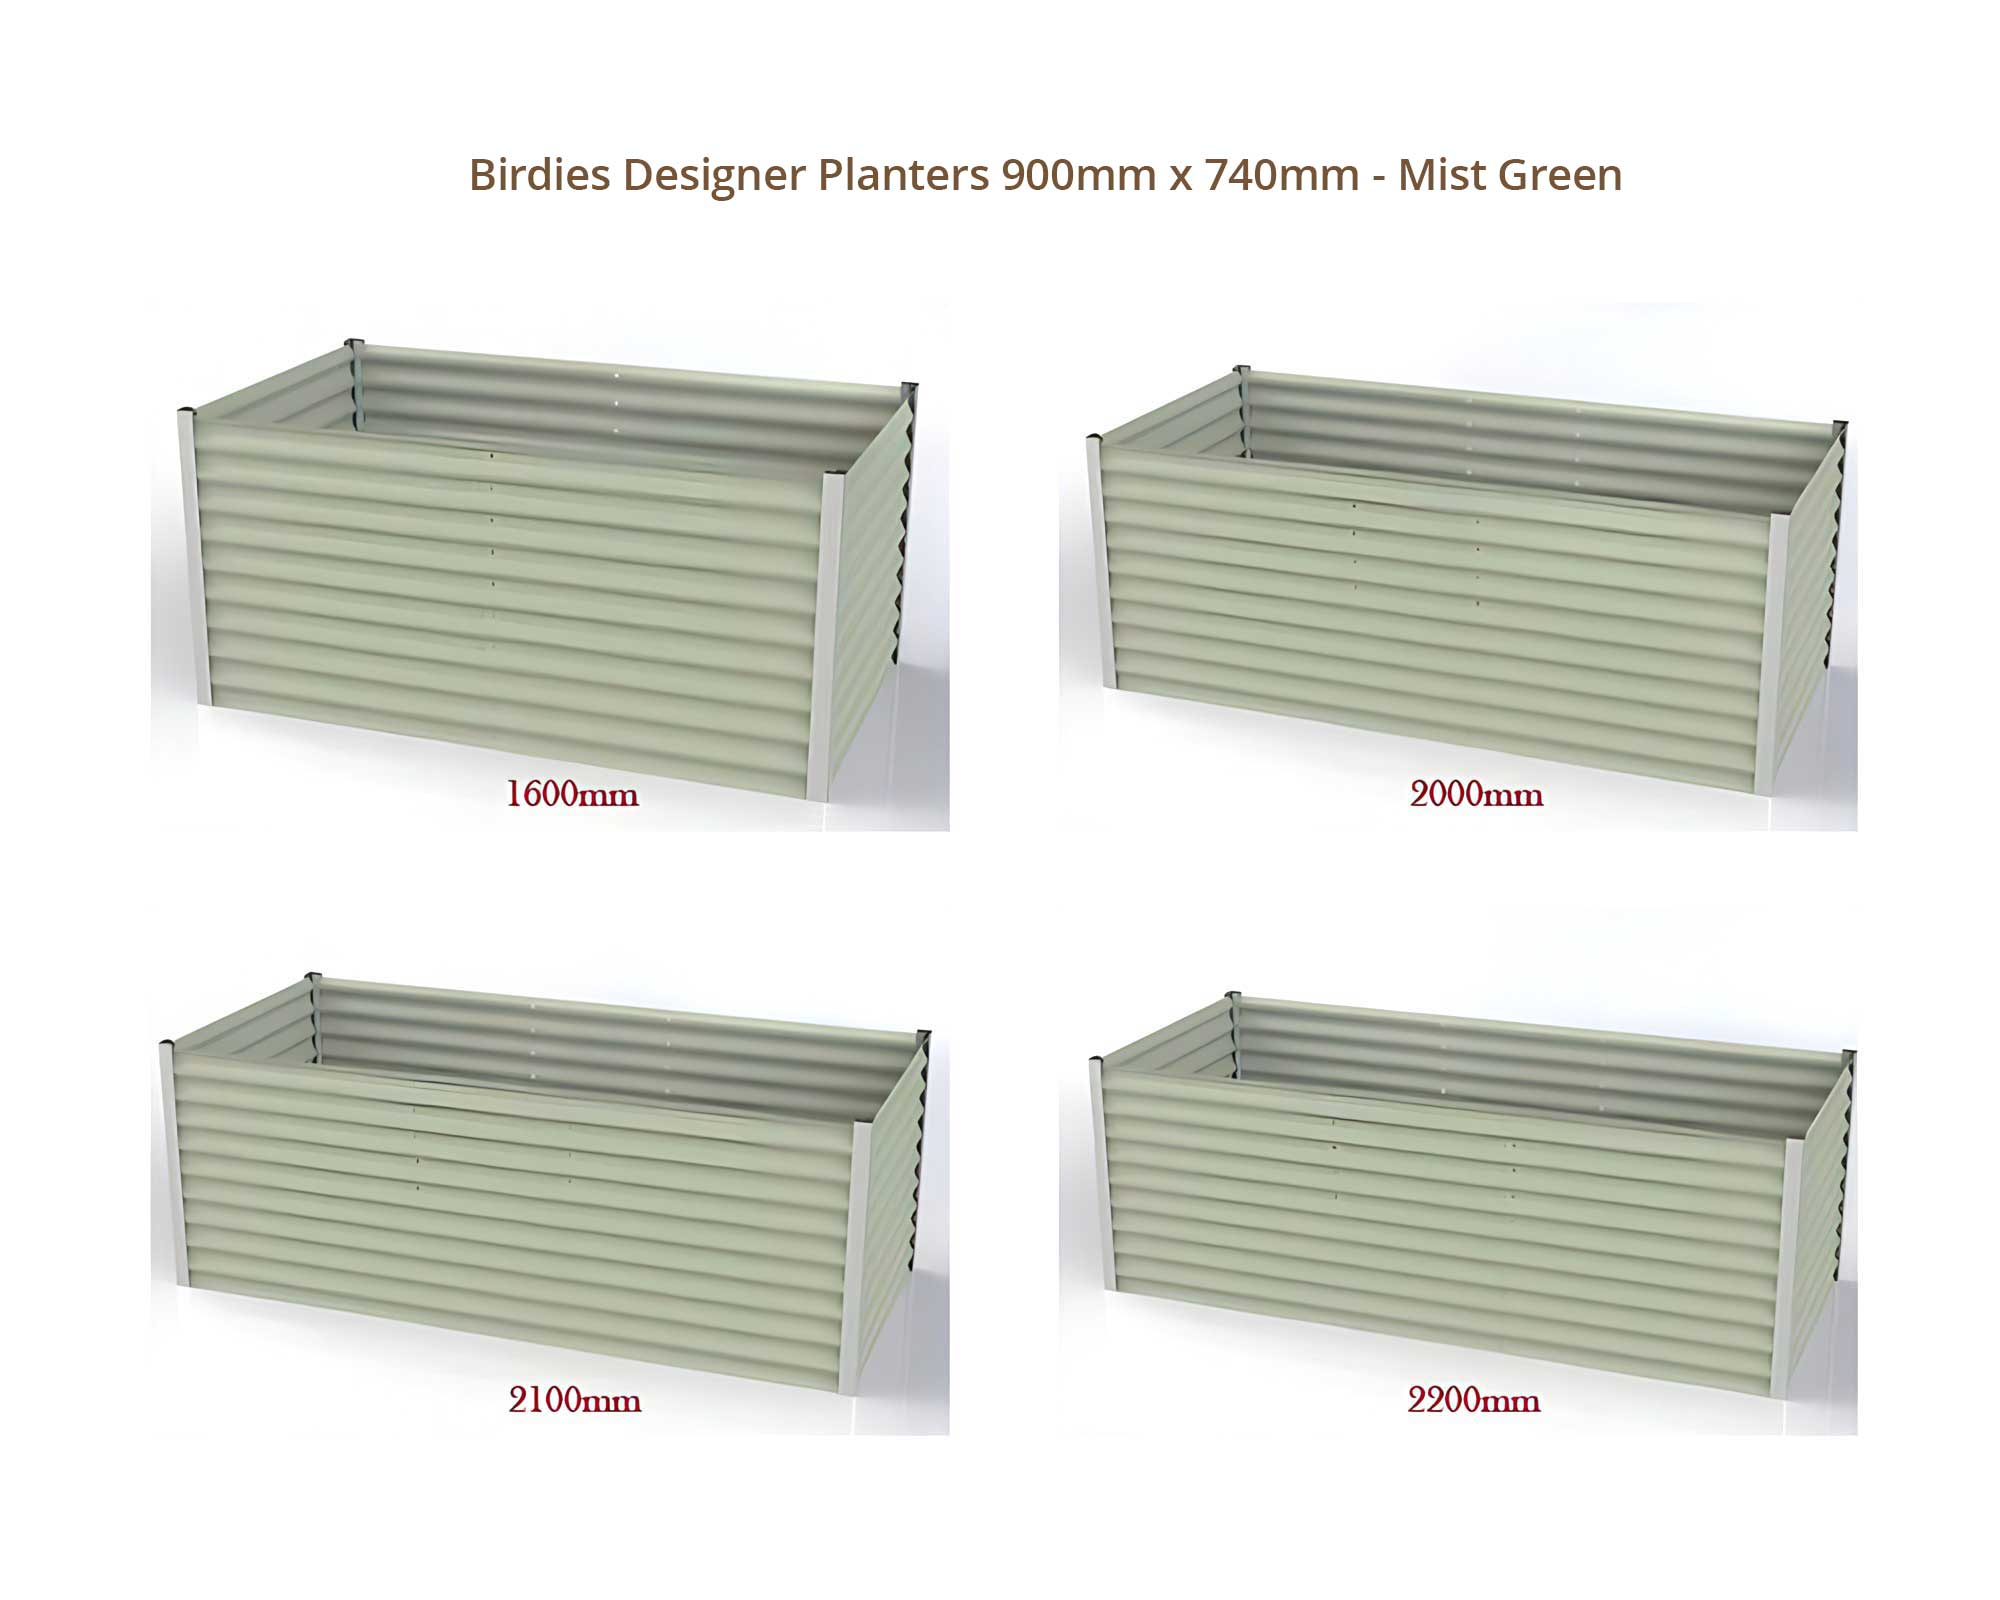 Birdies Designer Planters - 900mm Wide x 740mm High - Mist Green